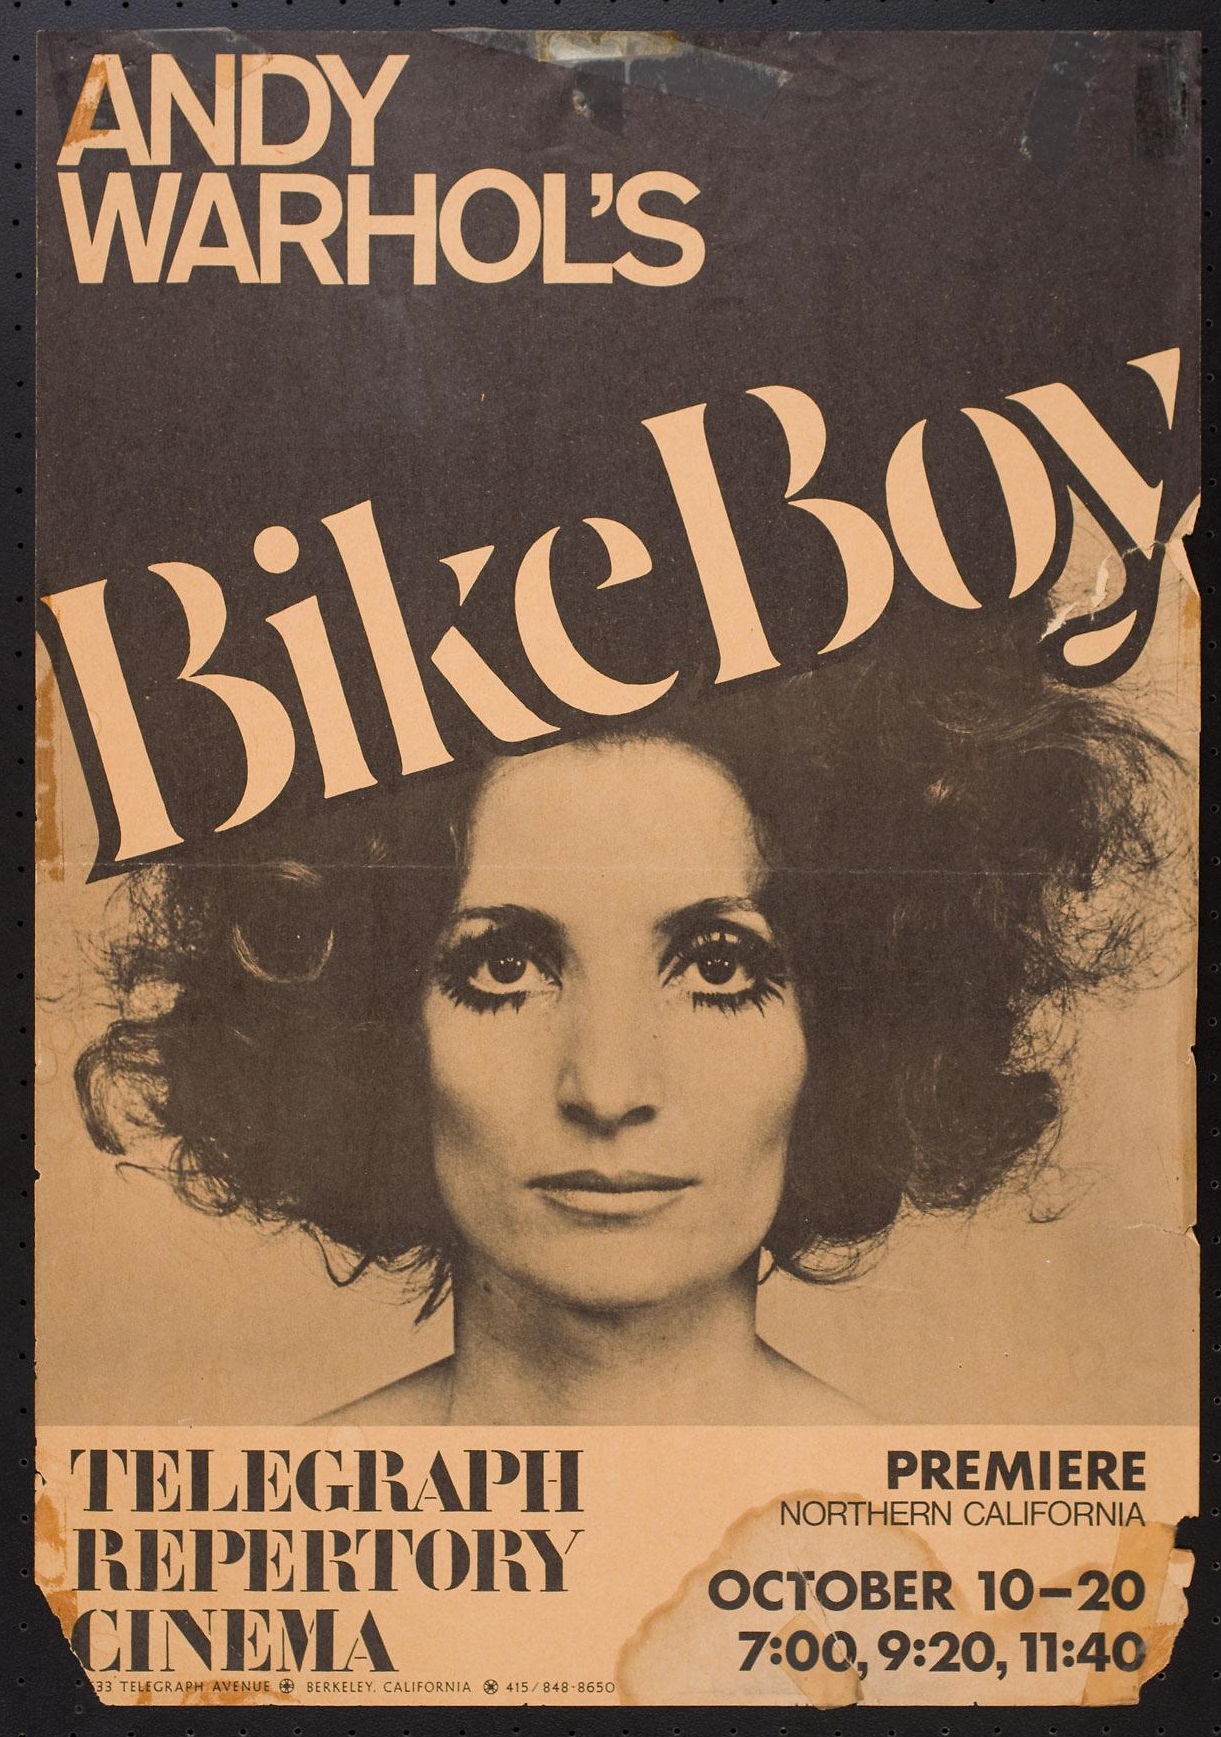 Bike Boy (1967) Screenshot 3